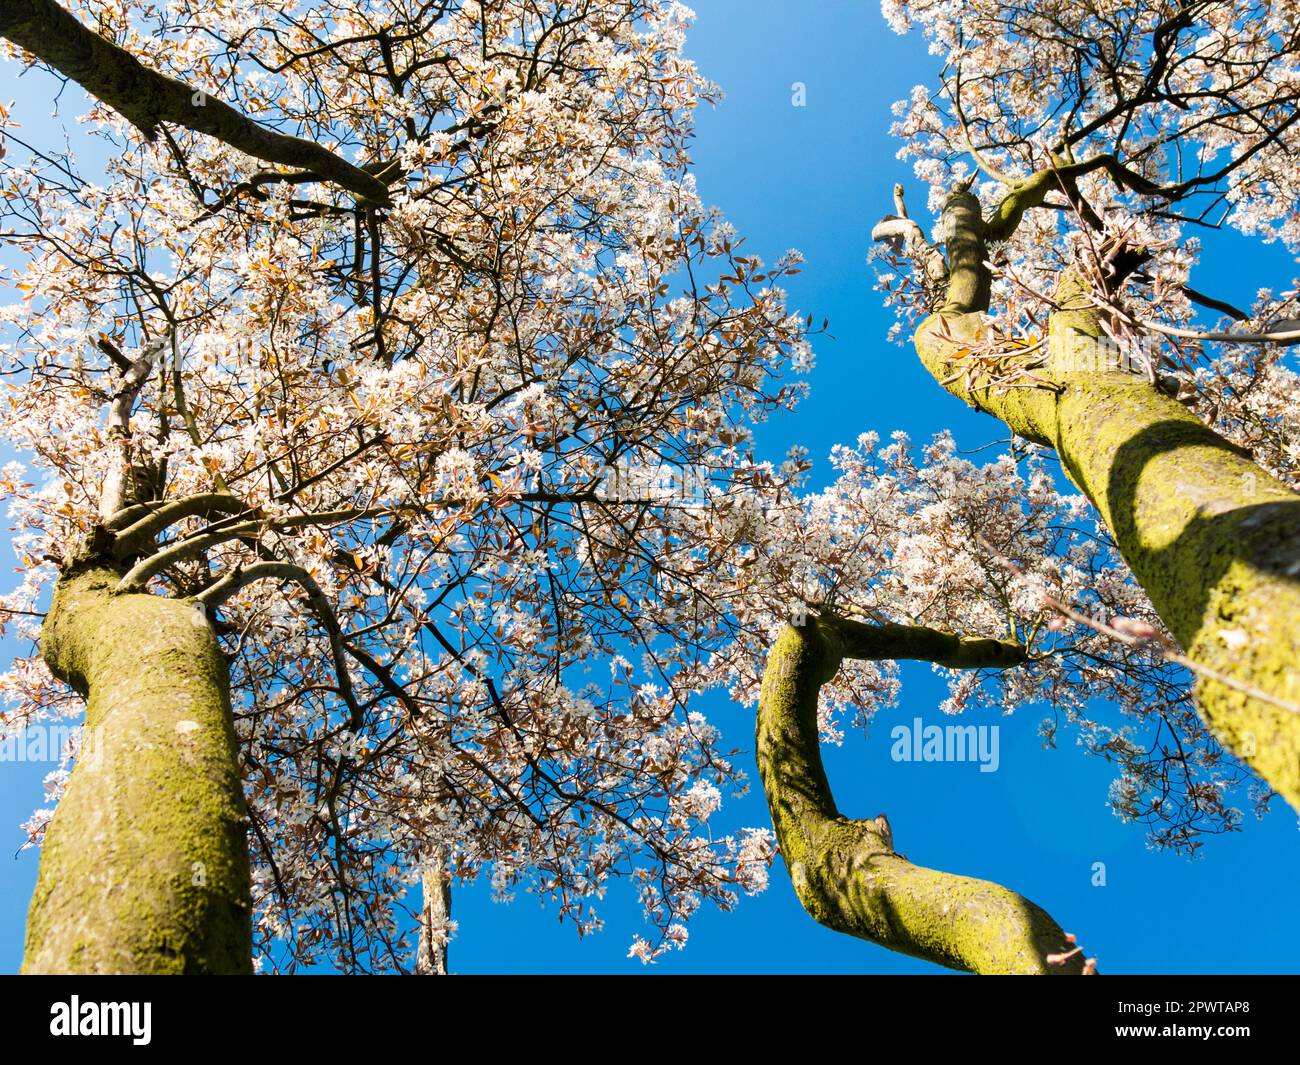 Wacholderbeere oder verschneiter mespilusbaum, Amelanchier lamarkii, Baumstämme mit Blüten im Frühjahr gegen klaren blauen Himmel, Niederlande Stockfoto